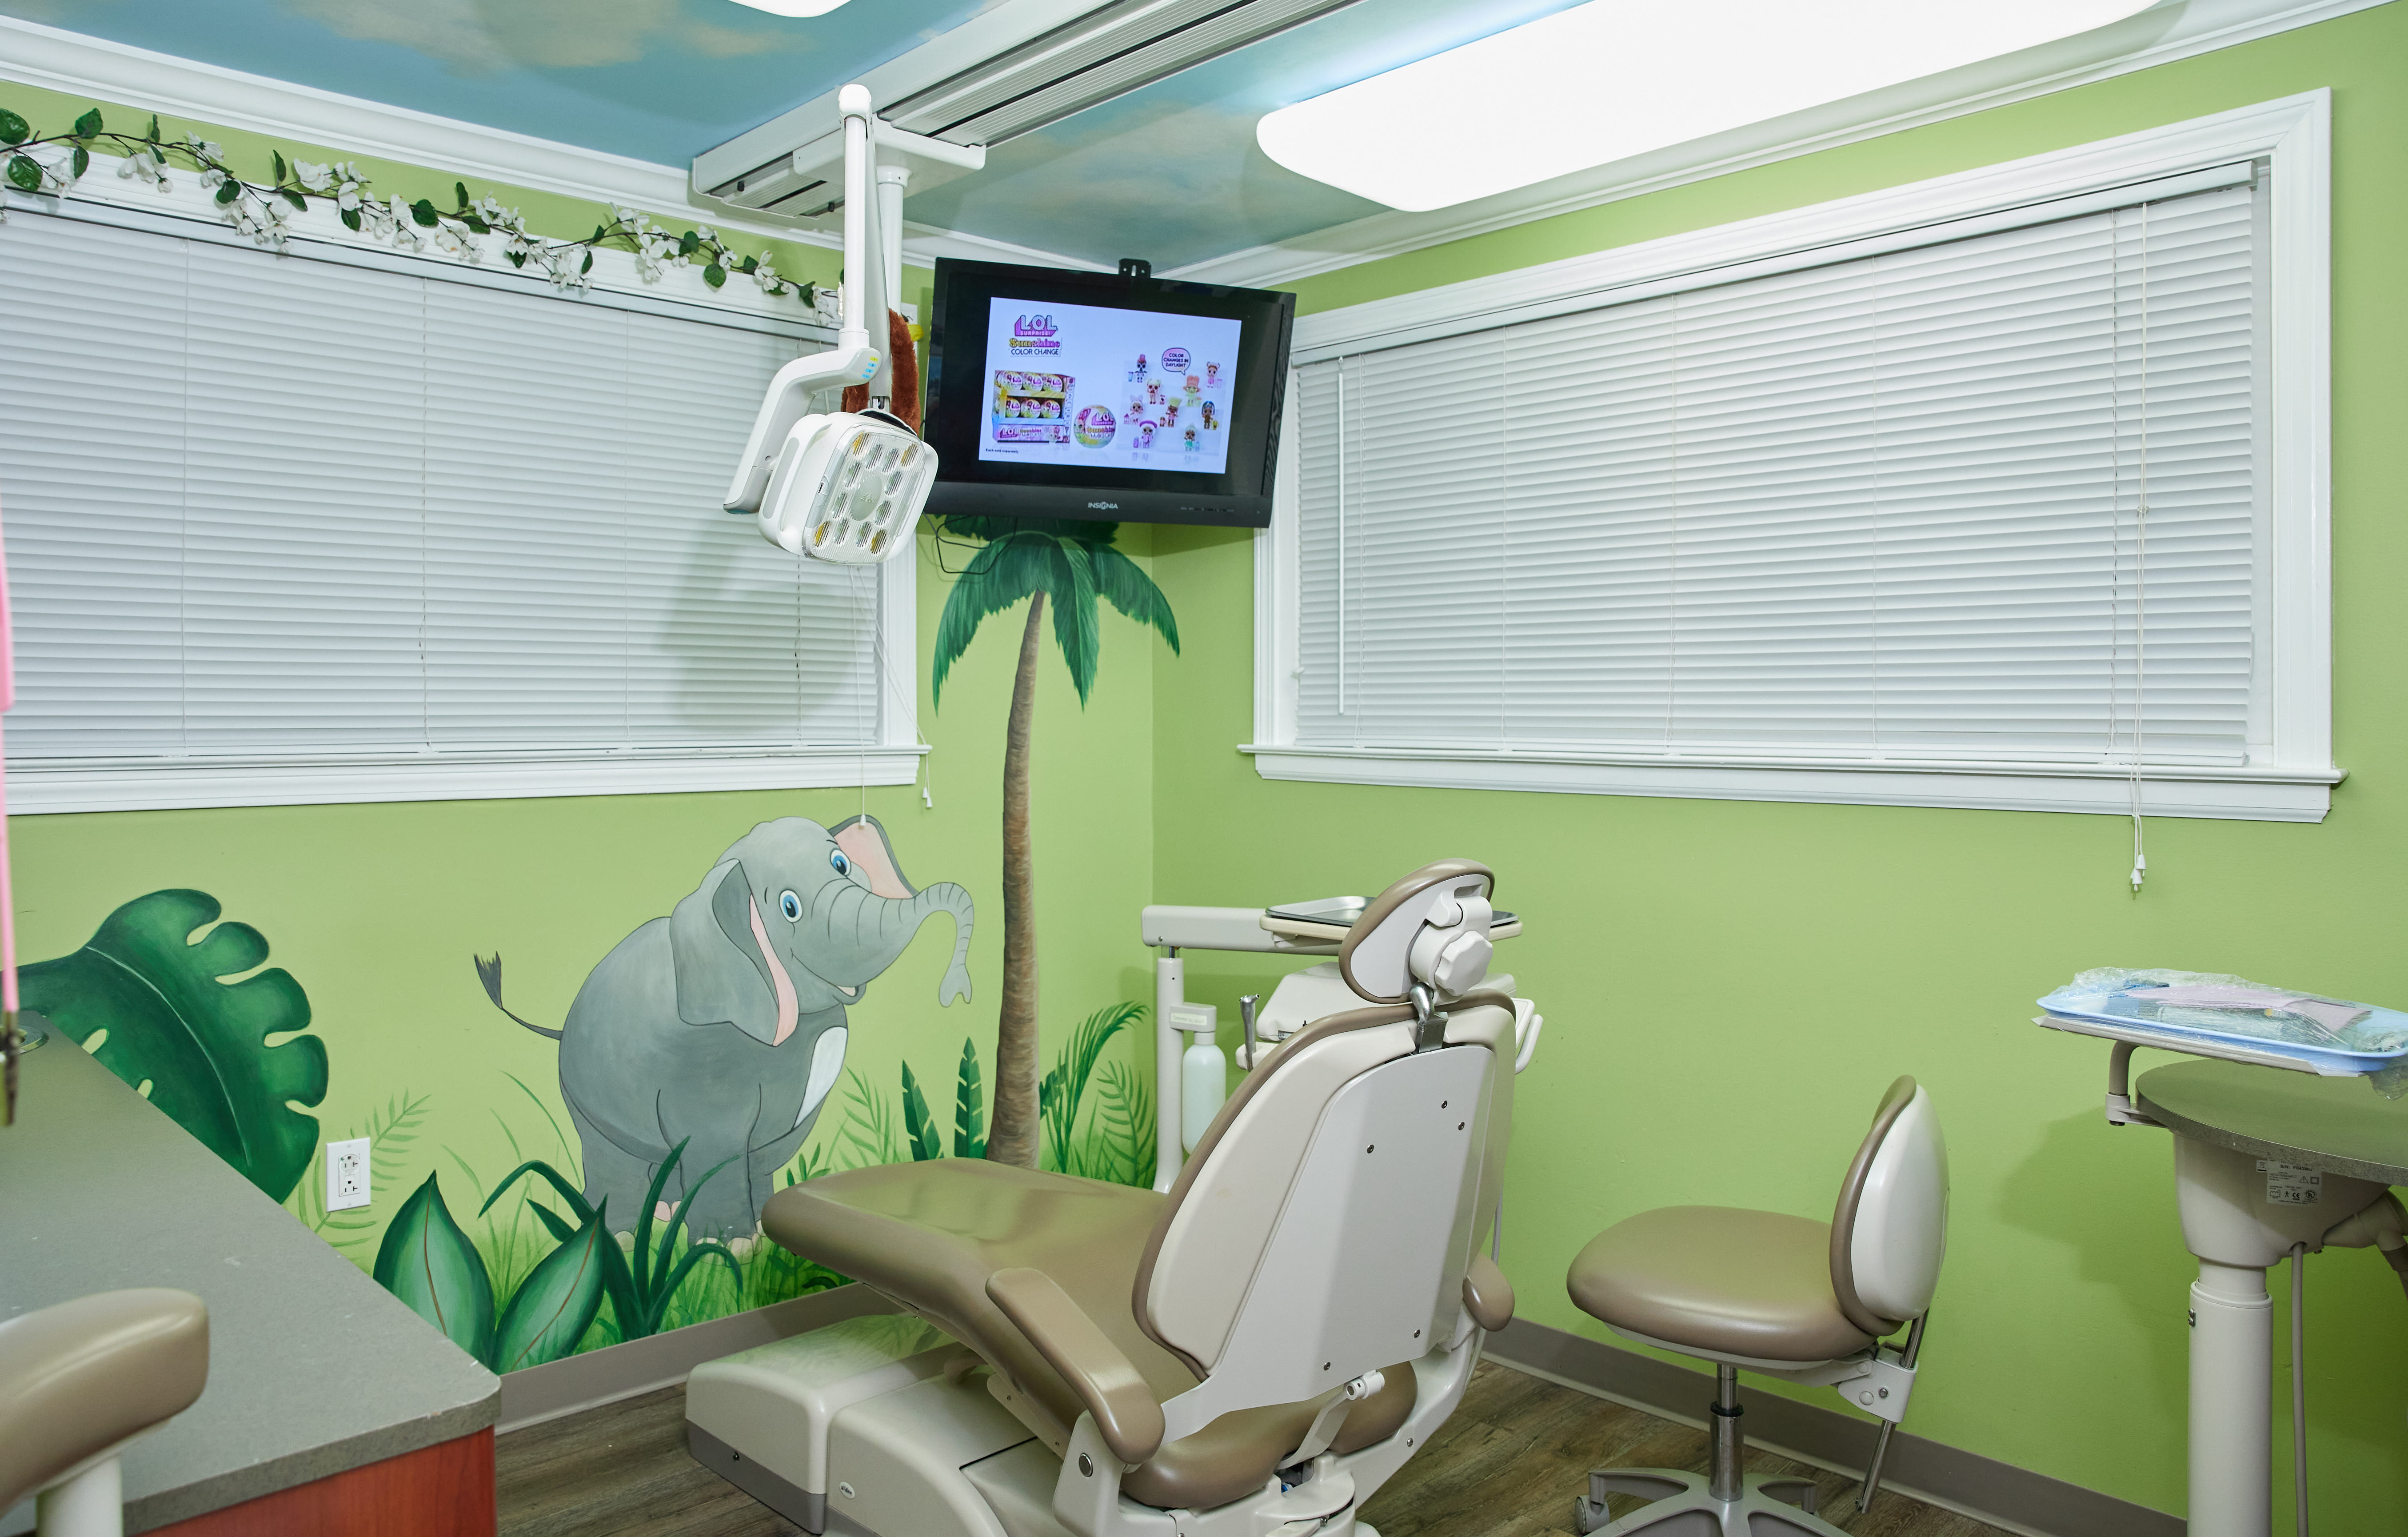 Tiny Teeth Pediatric Dentistry